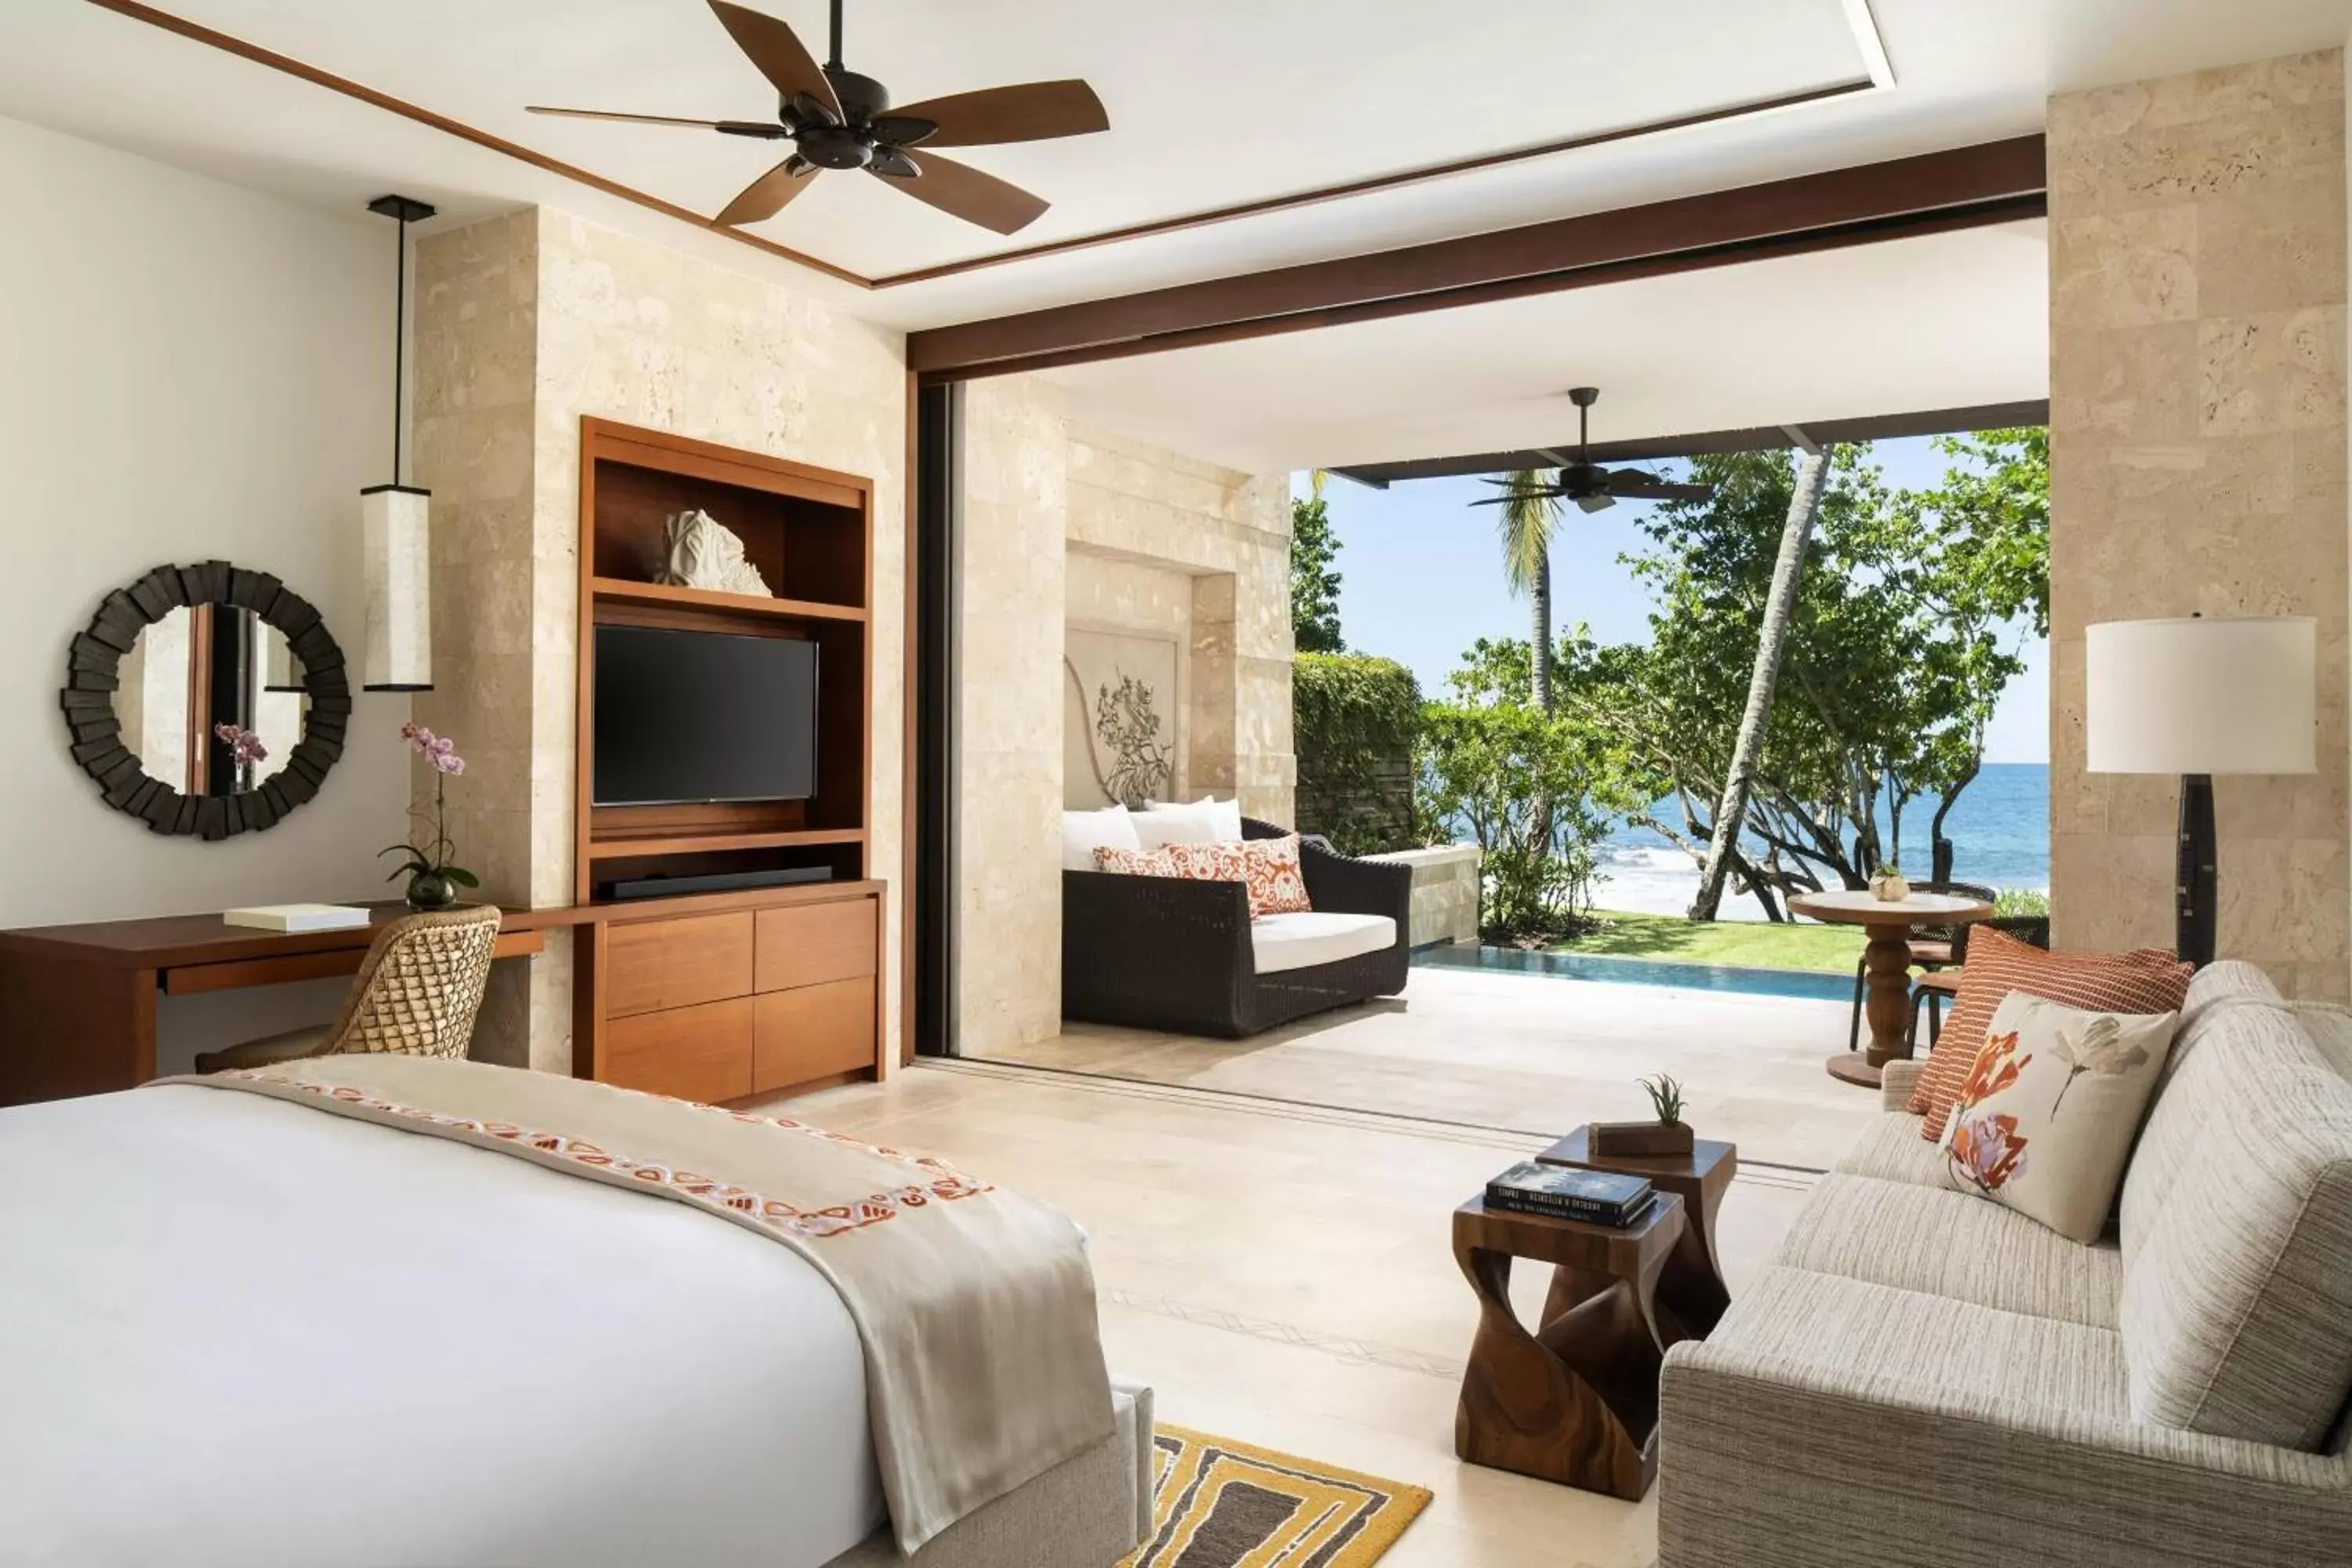 Bedroom, TV/Entertainment Center in Dorado Beach, a Ritz-Carlton Reserve